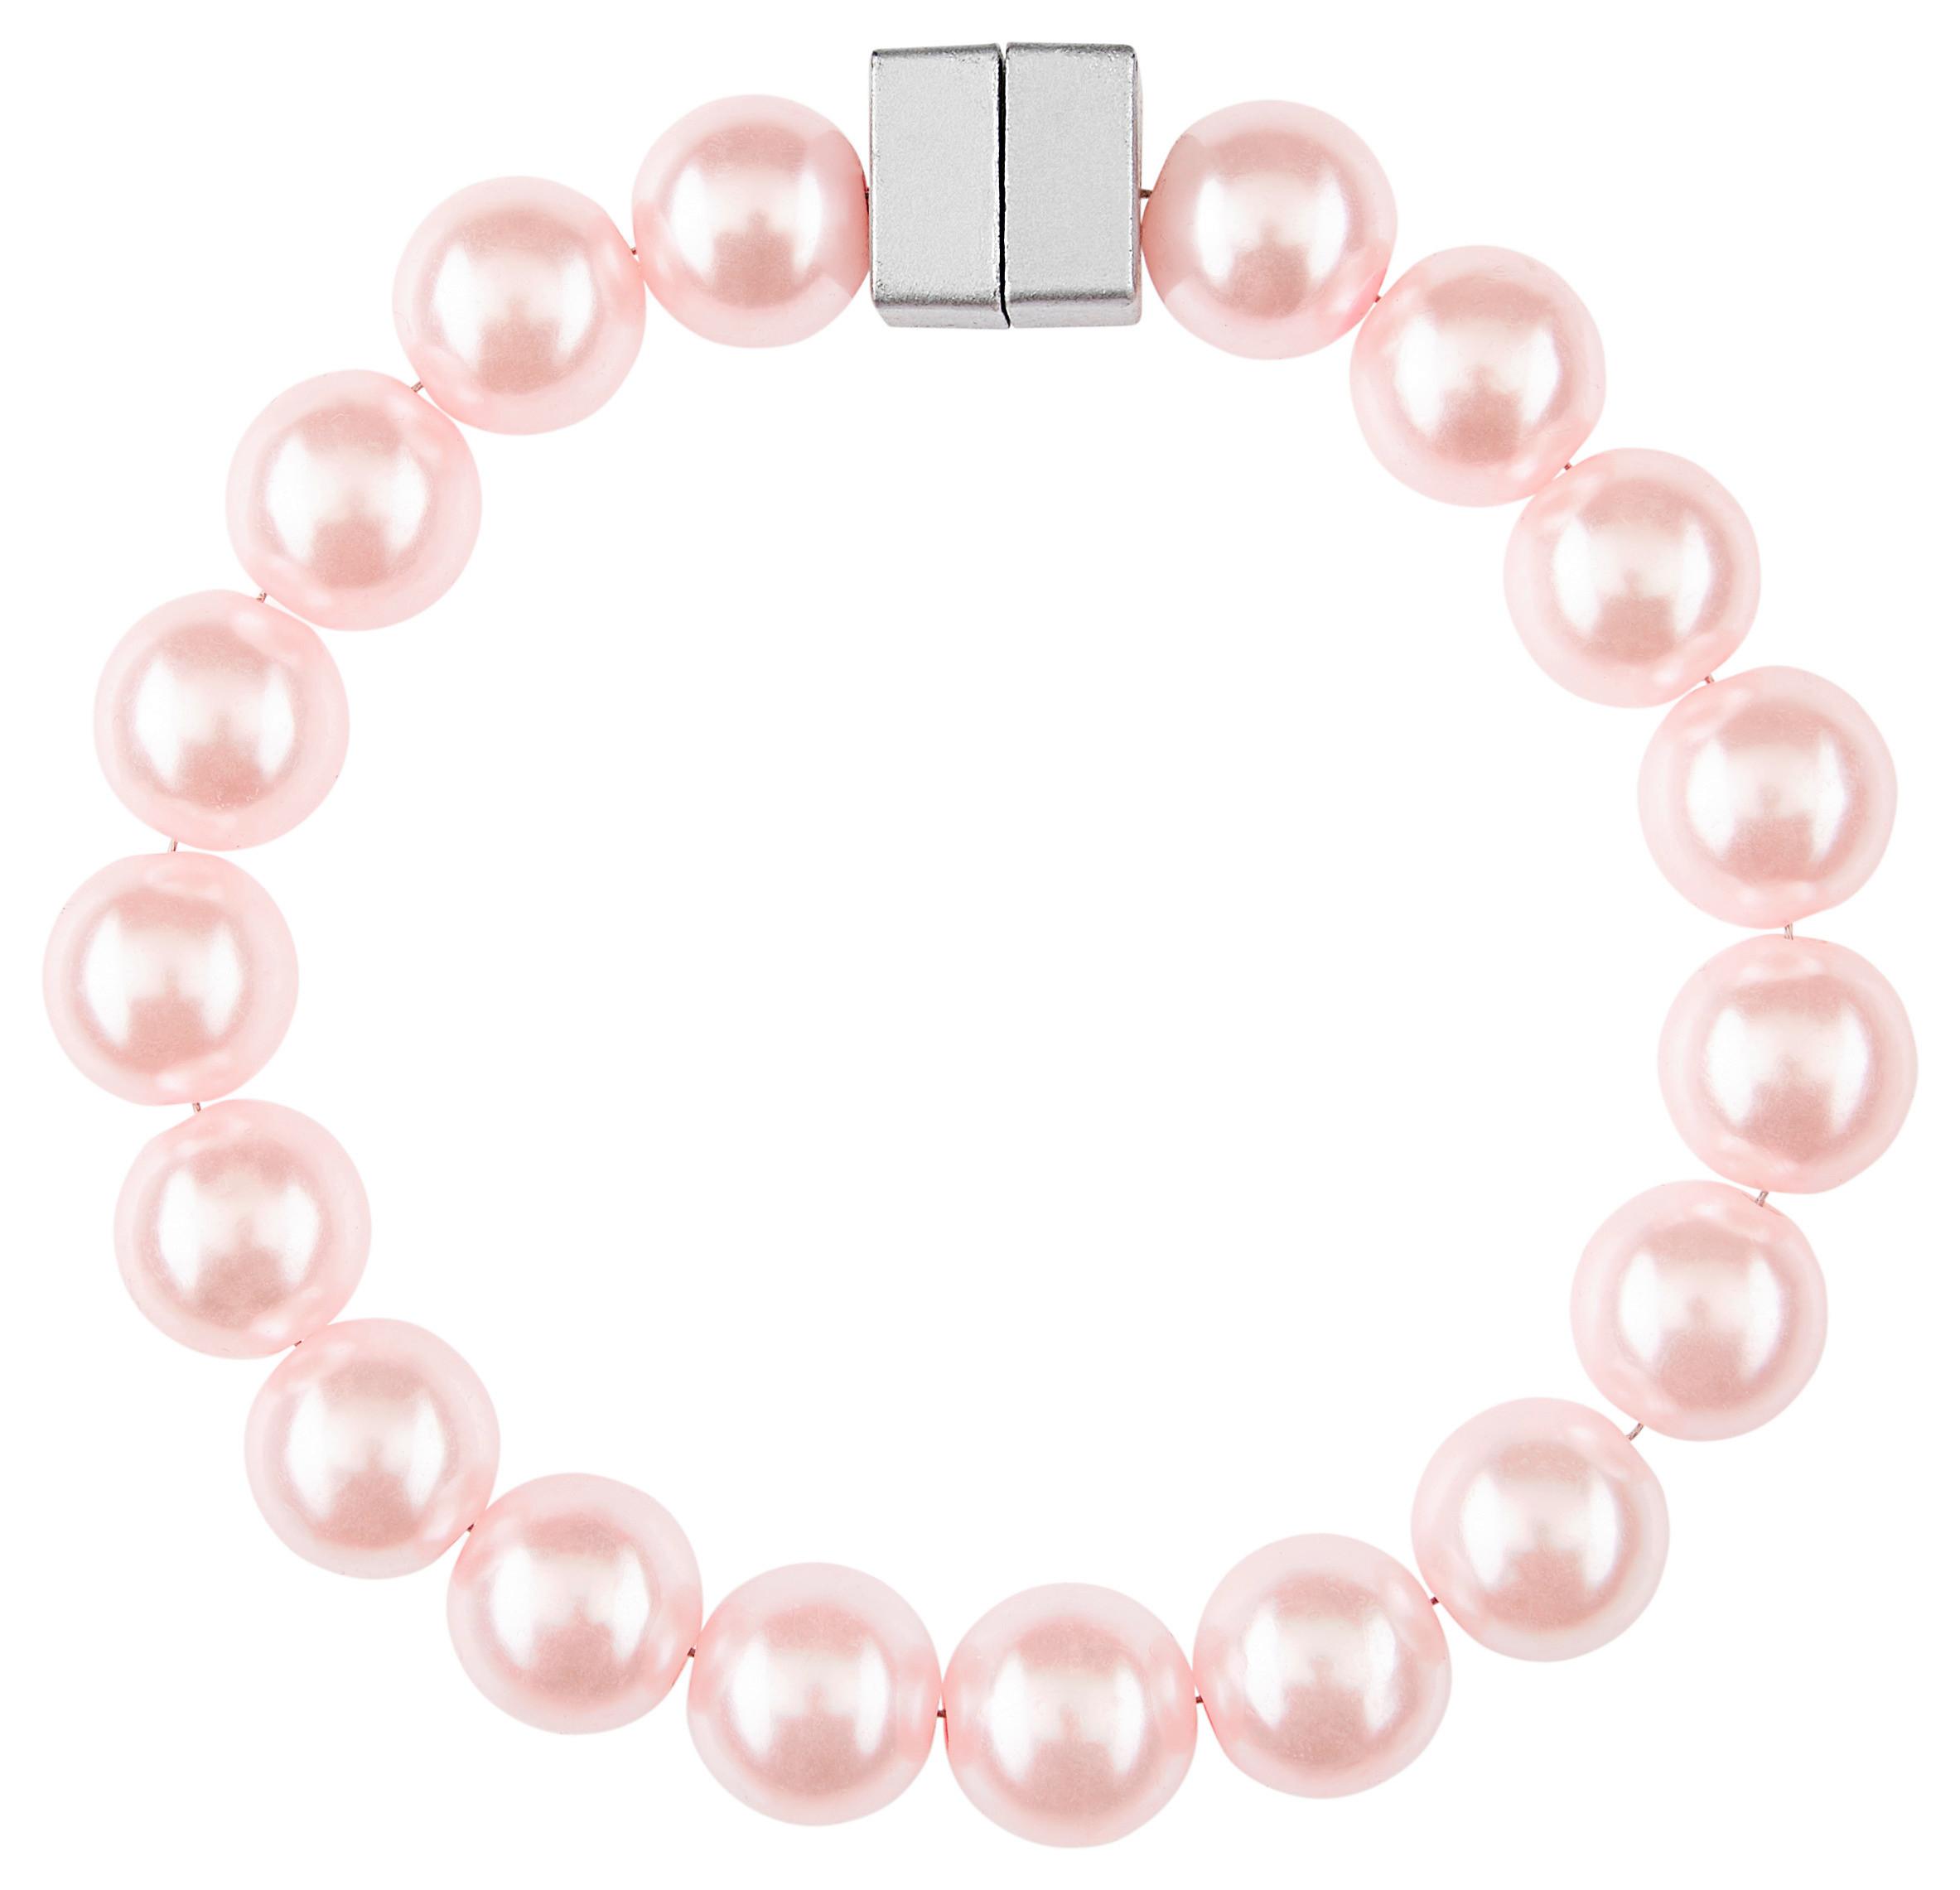 Kopča Za Zavjese Perlenkette - ružičasta, Romantik / Landhaus, plastika (29cm) - Modern Living